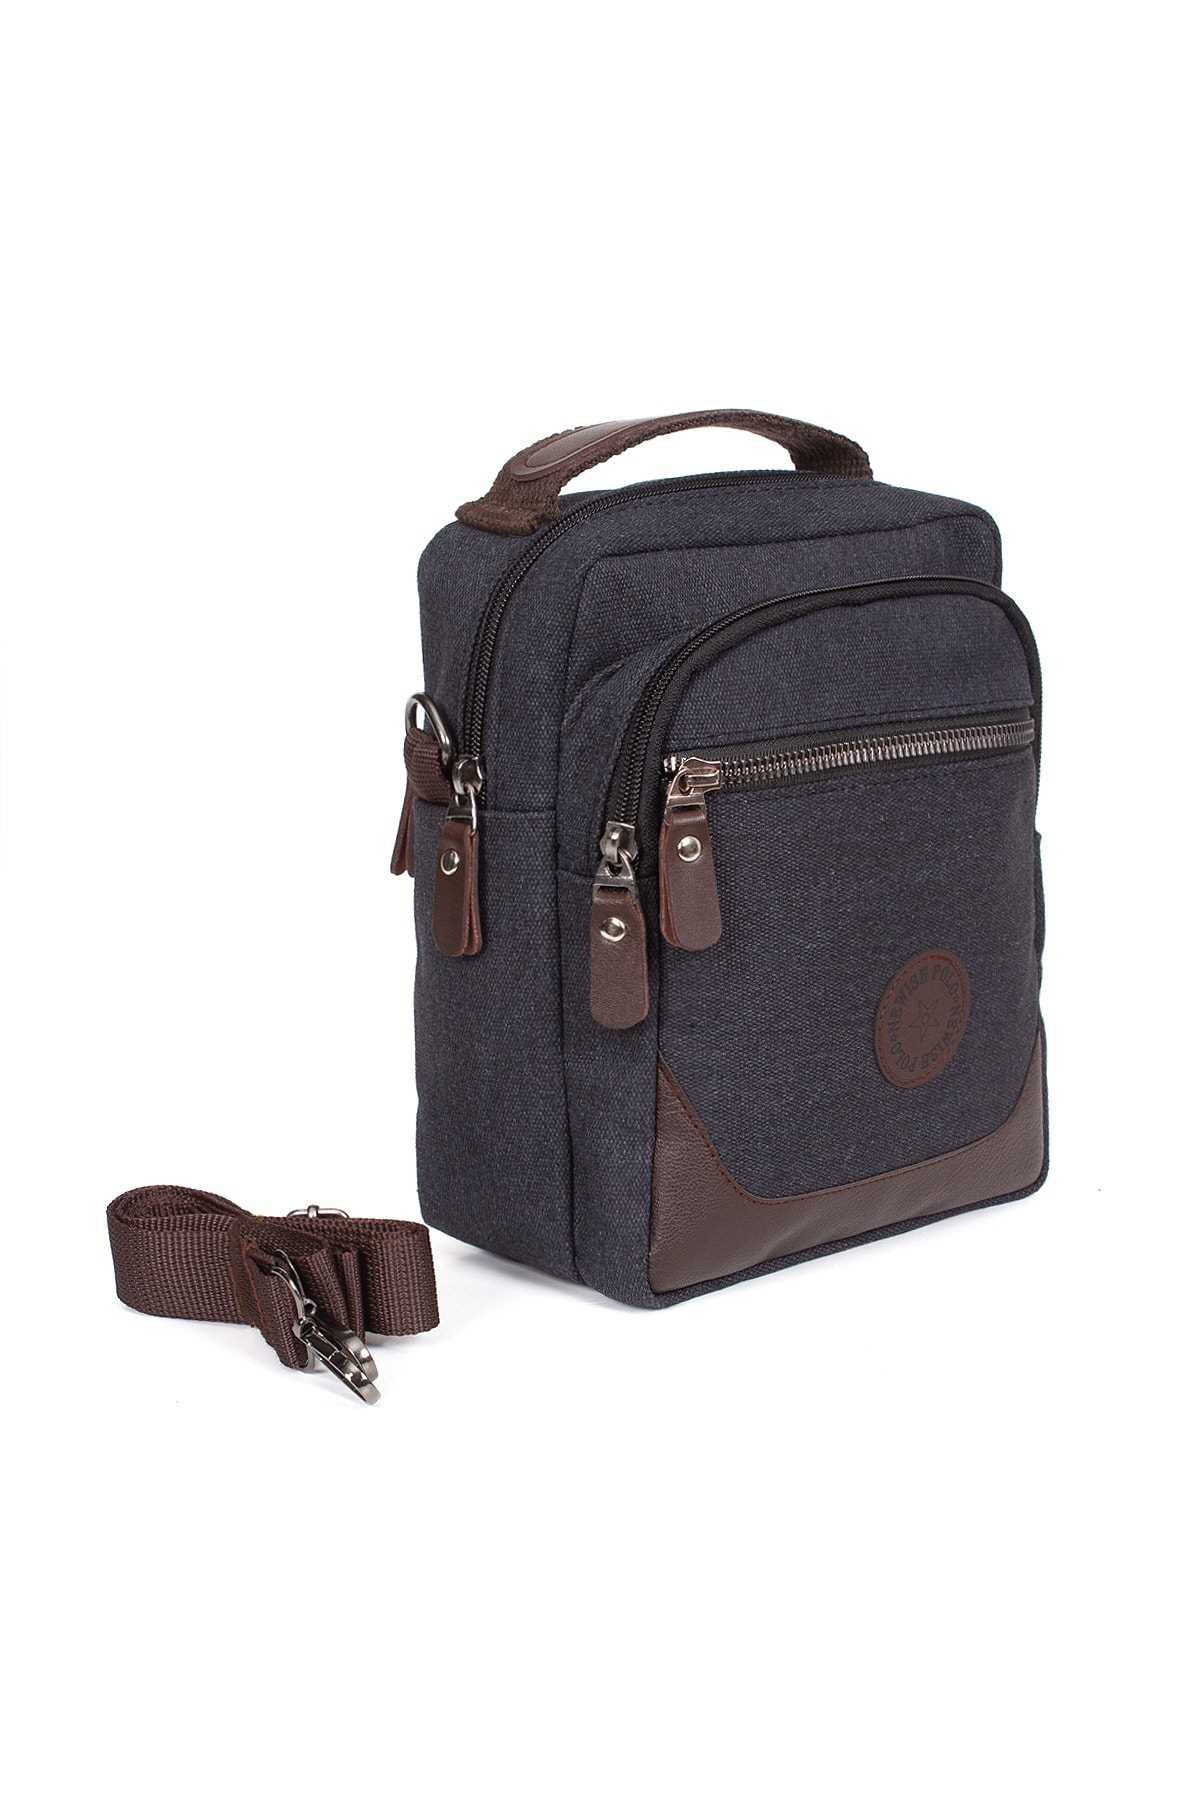 فروش کیف دستی جدید شیک Newish Polo رنگ نقره ای کد ty43391330